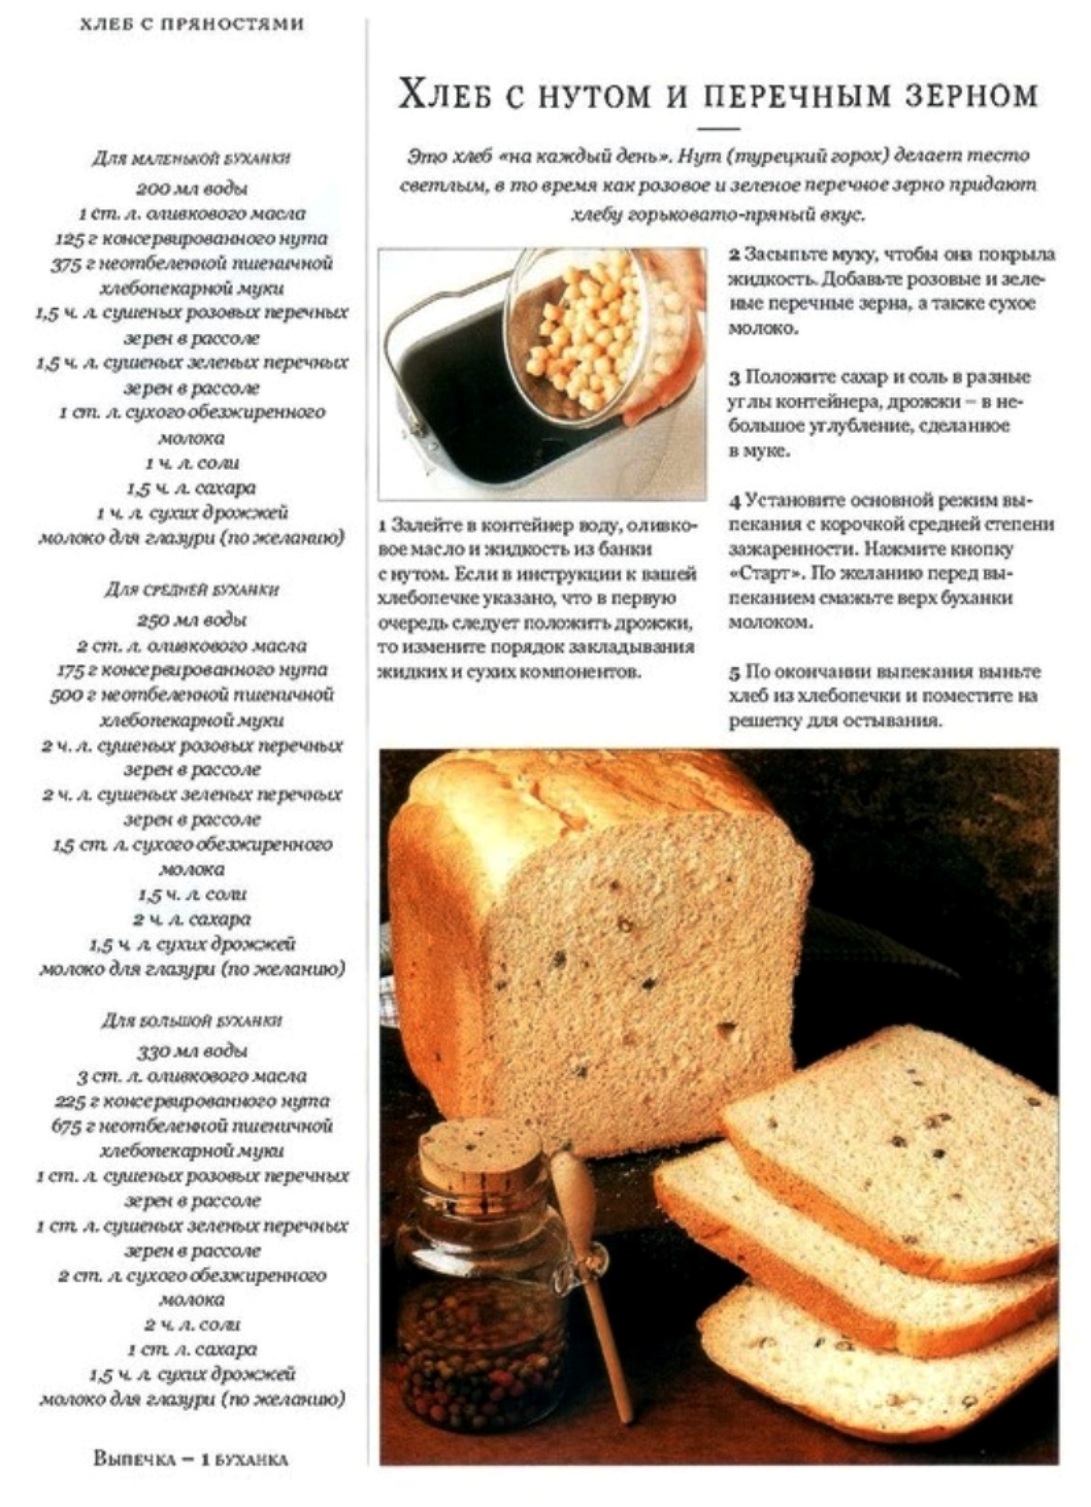 Рецепты пошагово хлеба в хлебопечке. Рецепт хлеба. Выпечка хлеба в хлебопечке-рецепты. Хлеб из хлебопечки. Рецепт хлеба в хлебопечке.